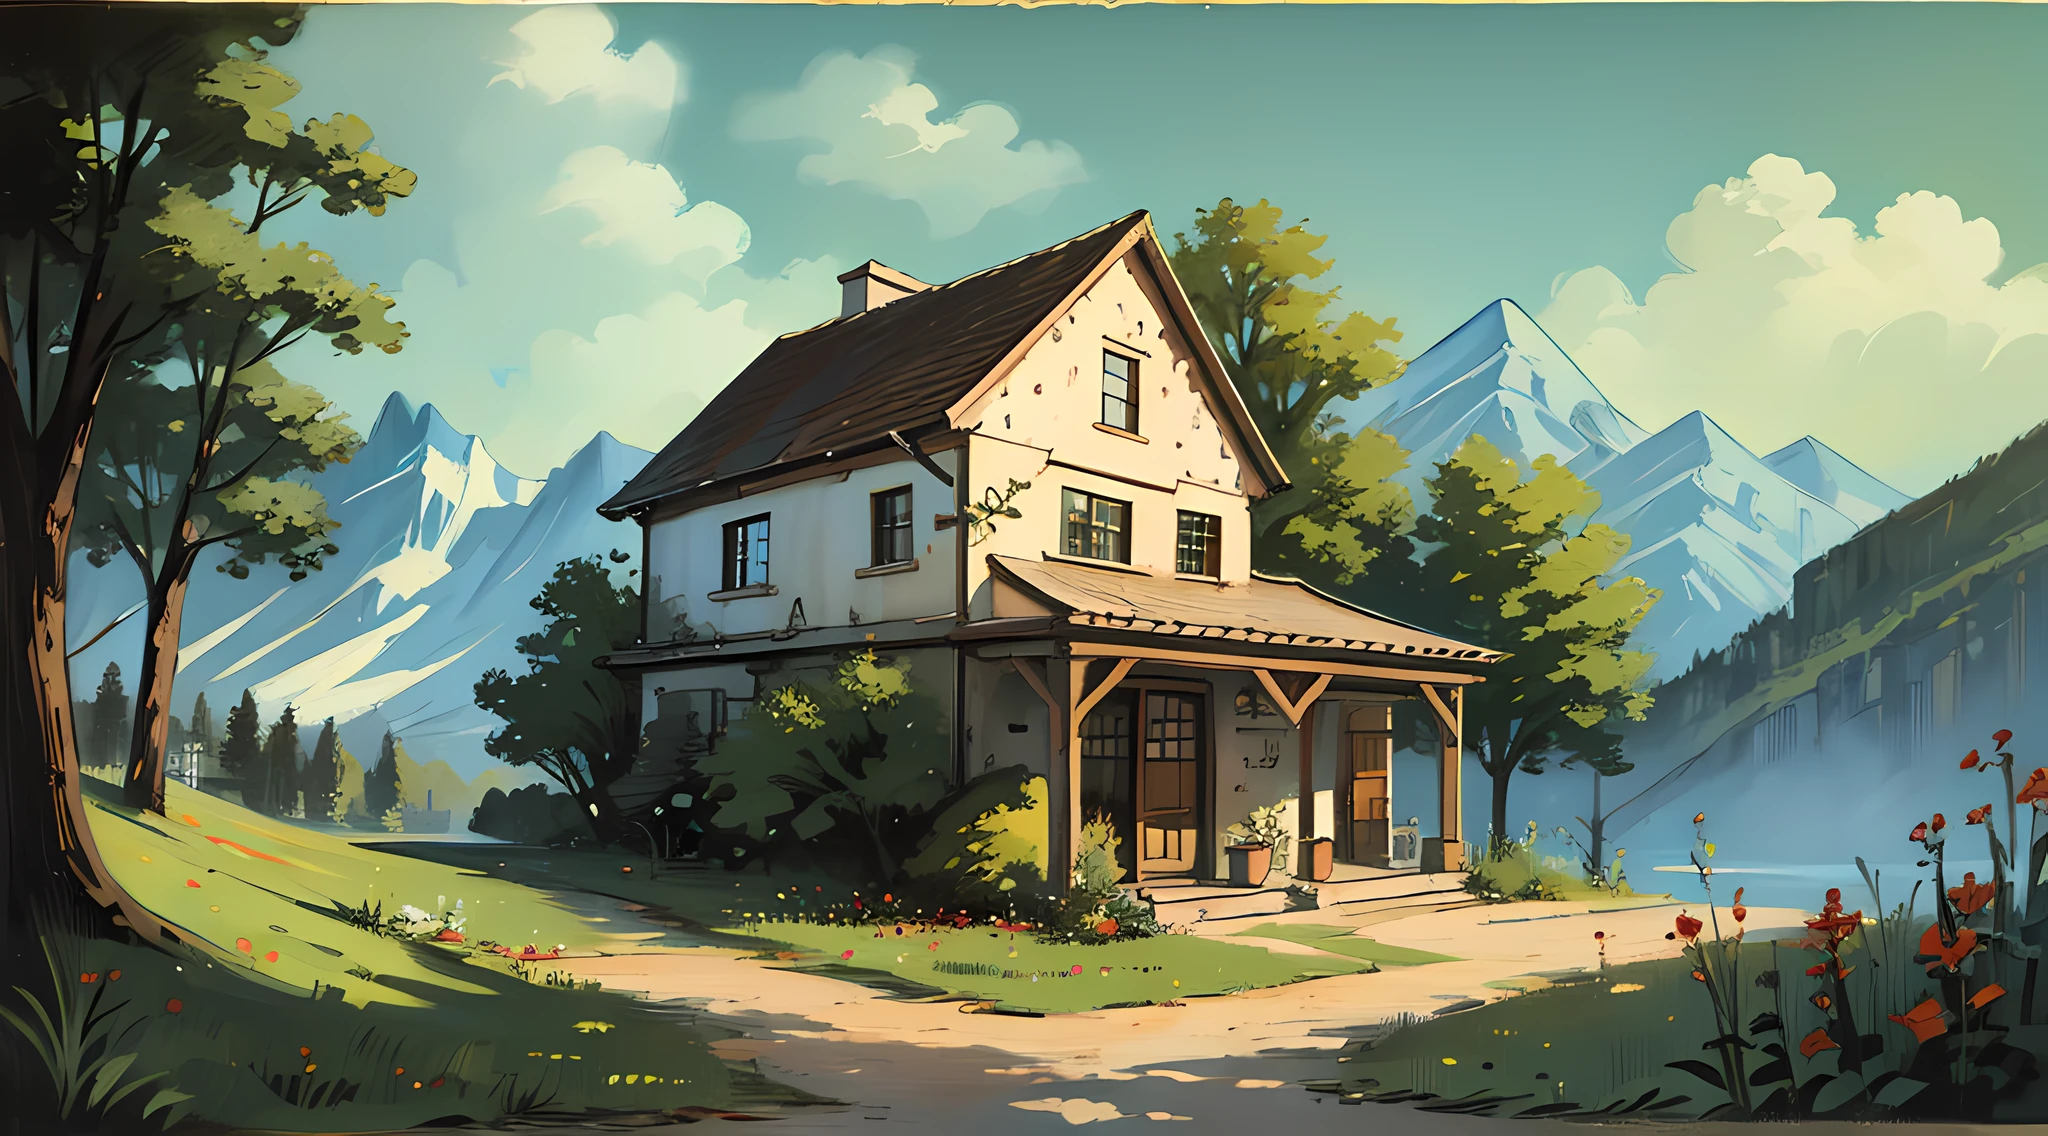 Casa de campo en la montaña， arte clasico， pintado al oleo